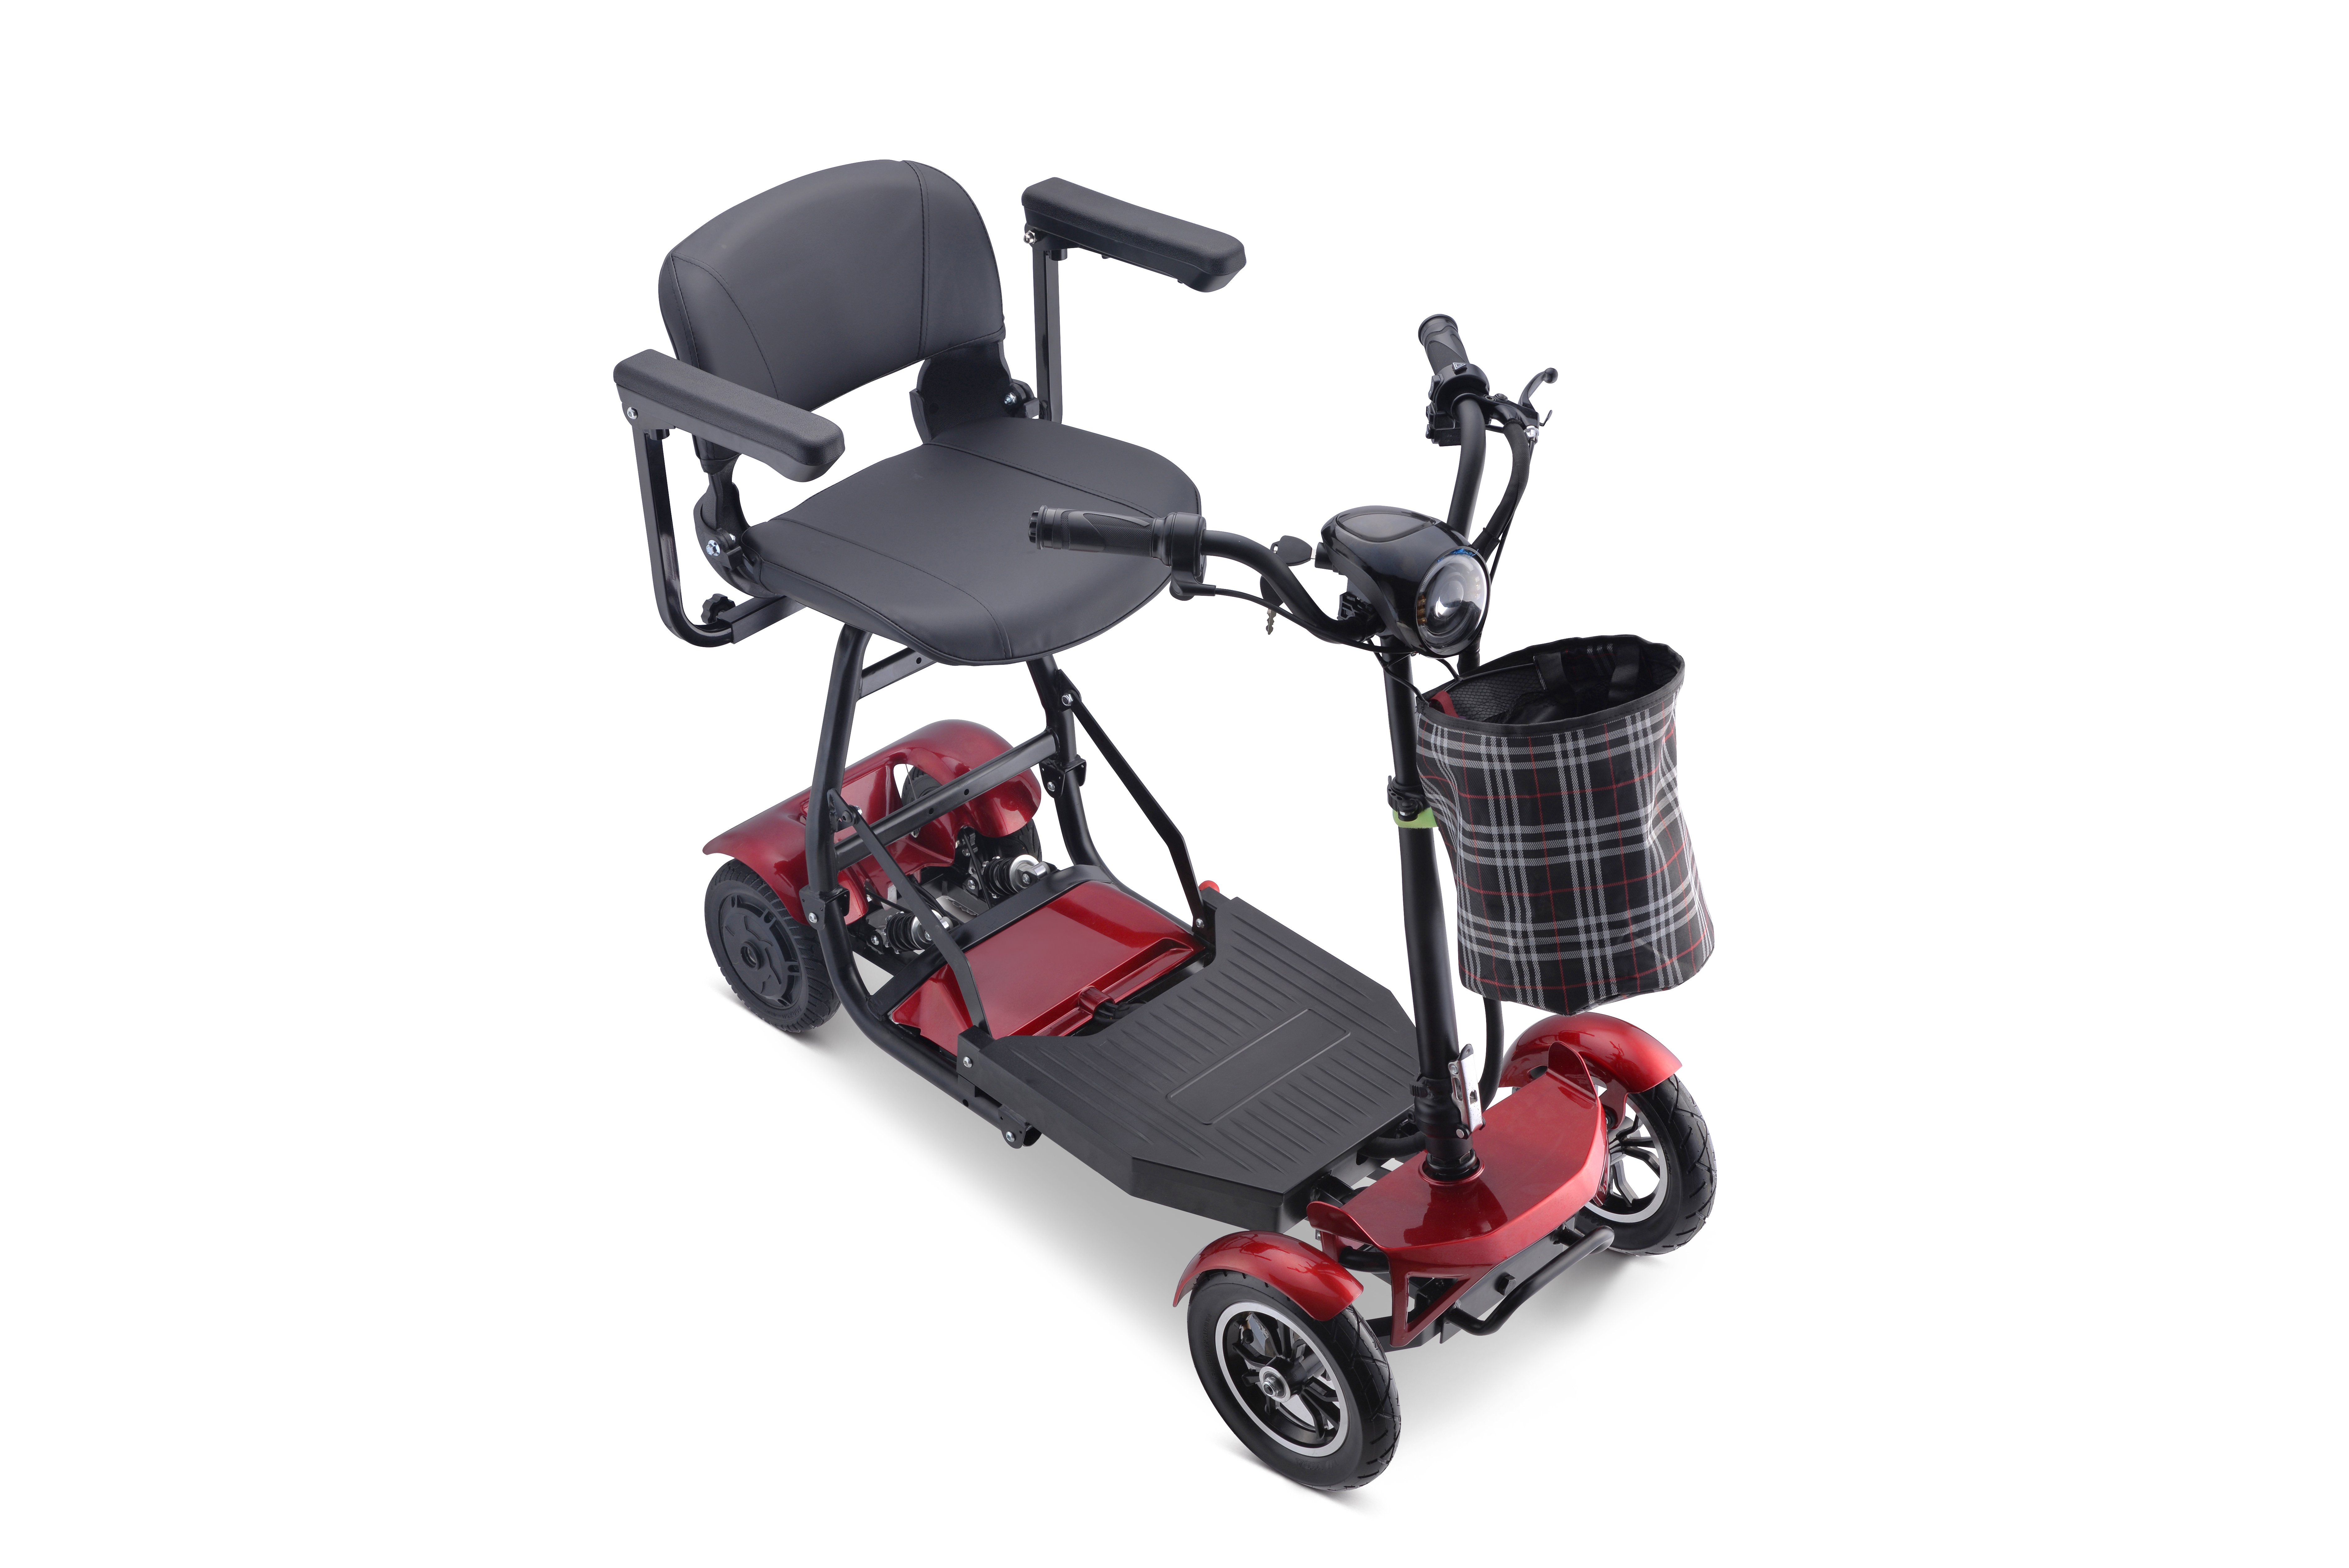 Nouveau Scooter électrique pliable portatif de mobilité de Lithium d'adulte bon marché Scooter électrique de 4 roues handicapé Image présentée